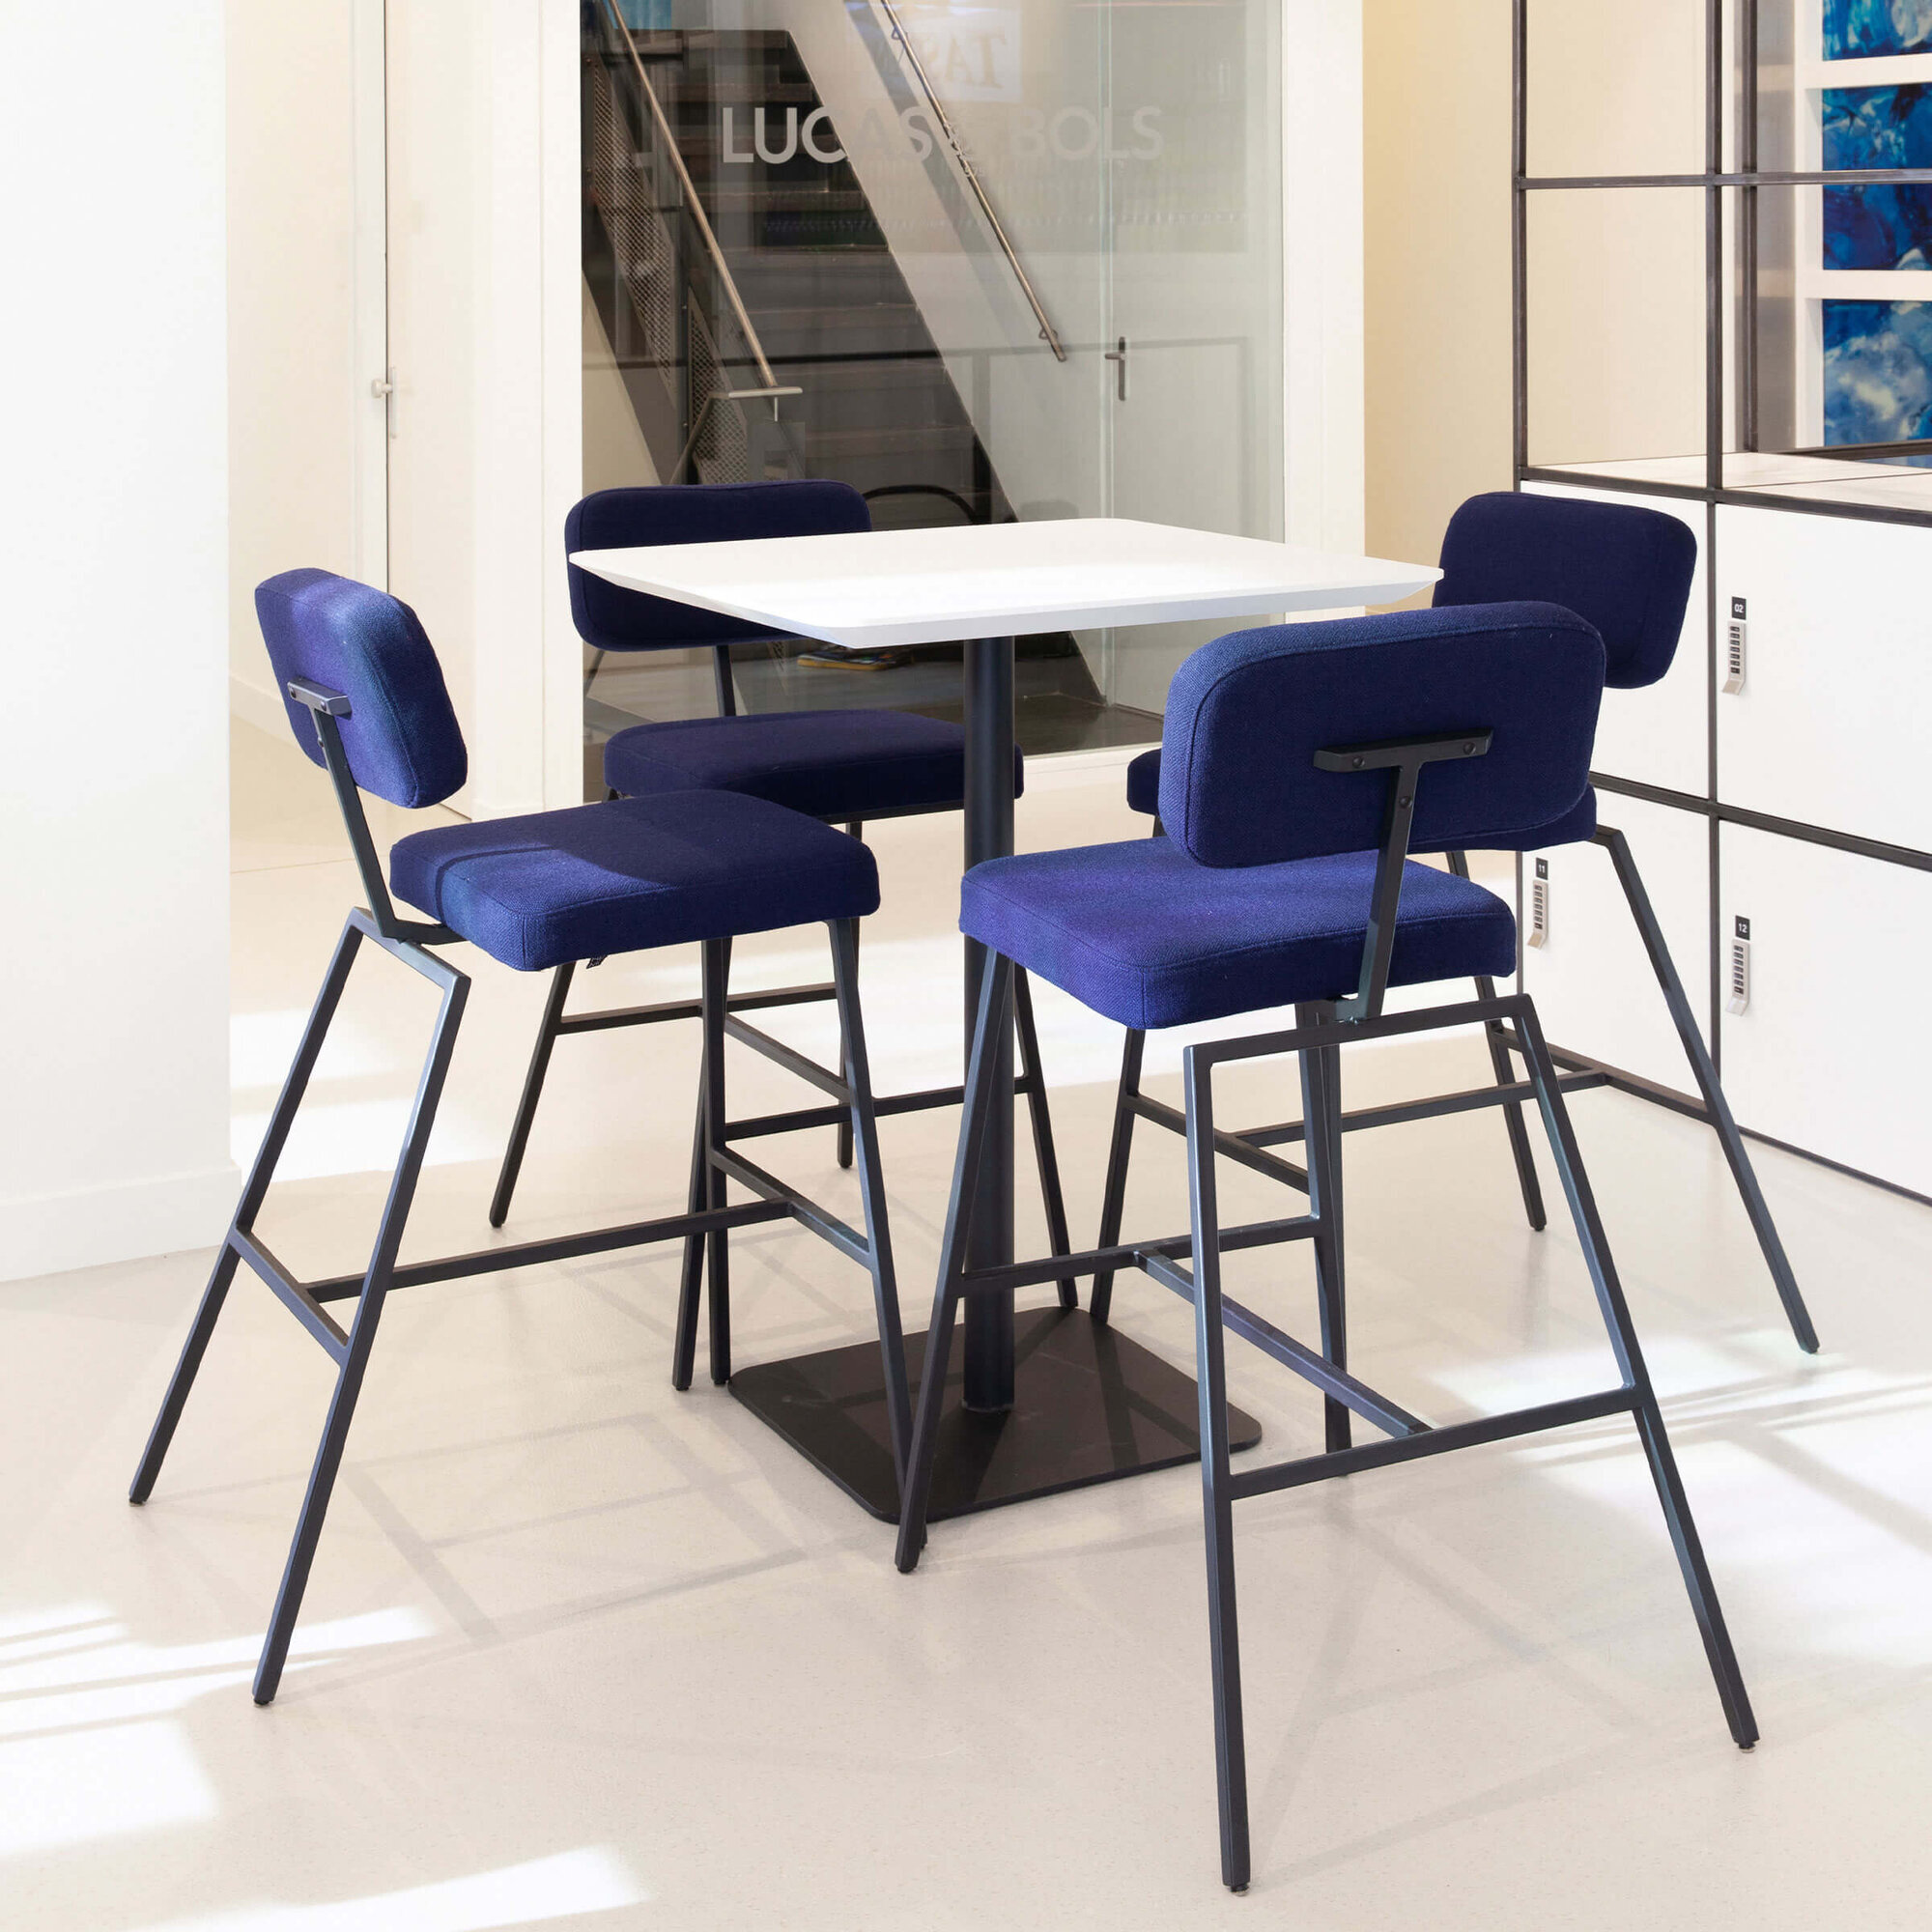 Rectangular Design Bistro Table | Central x 2 white | Oak hardwax oil natural light 3041 | Studio HENK| 